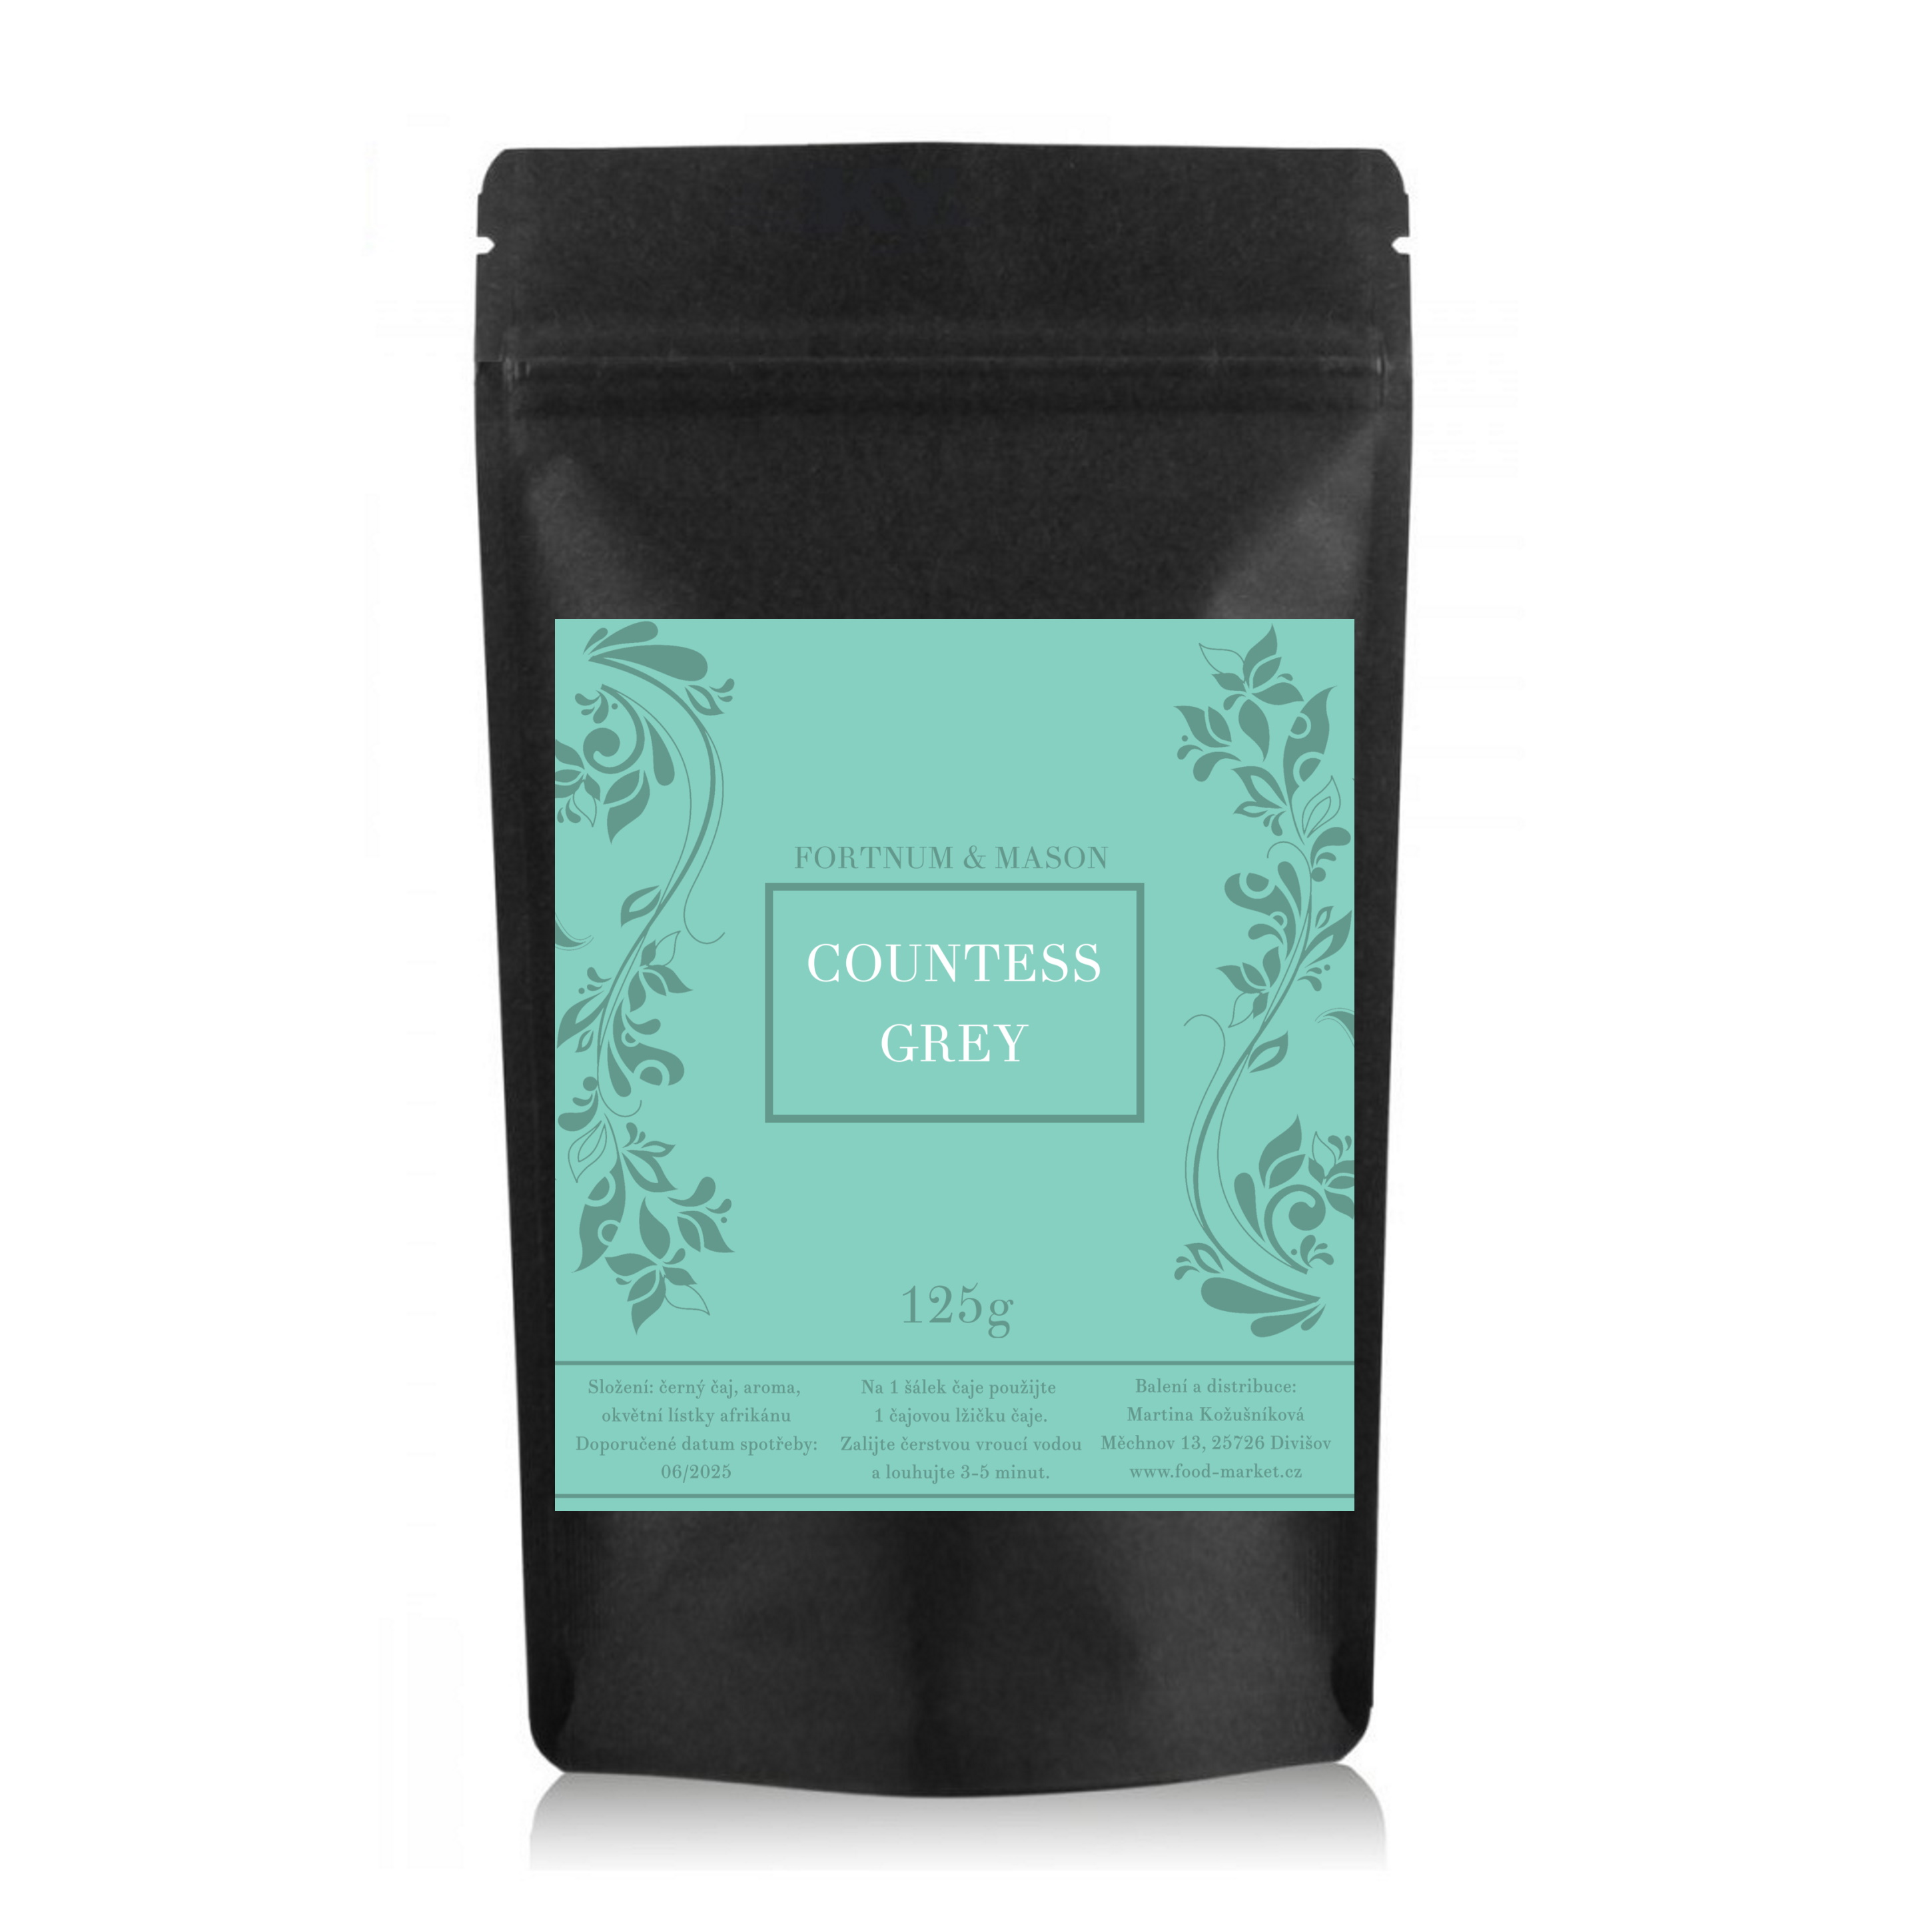 černý čaj COUNTESS GREY sypaný 125g (sáček) od Fortnum & Mason